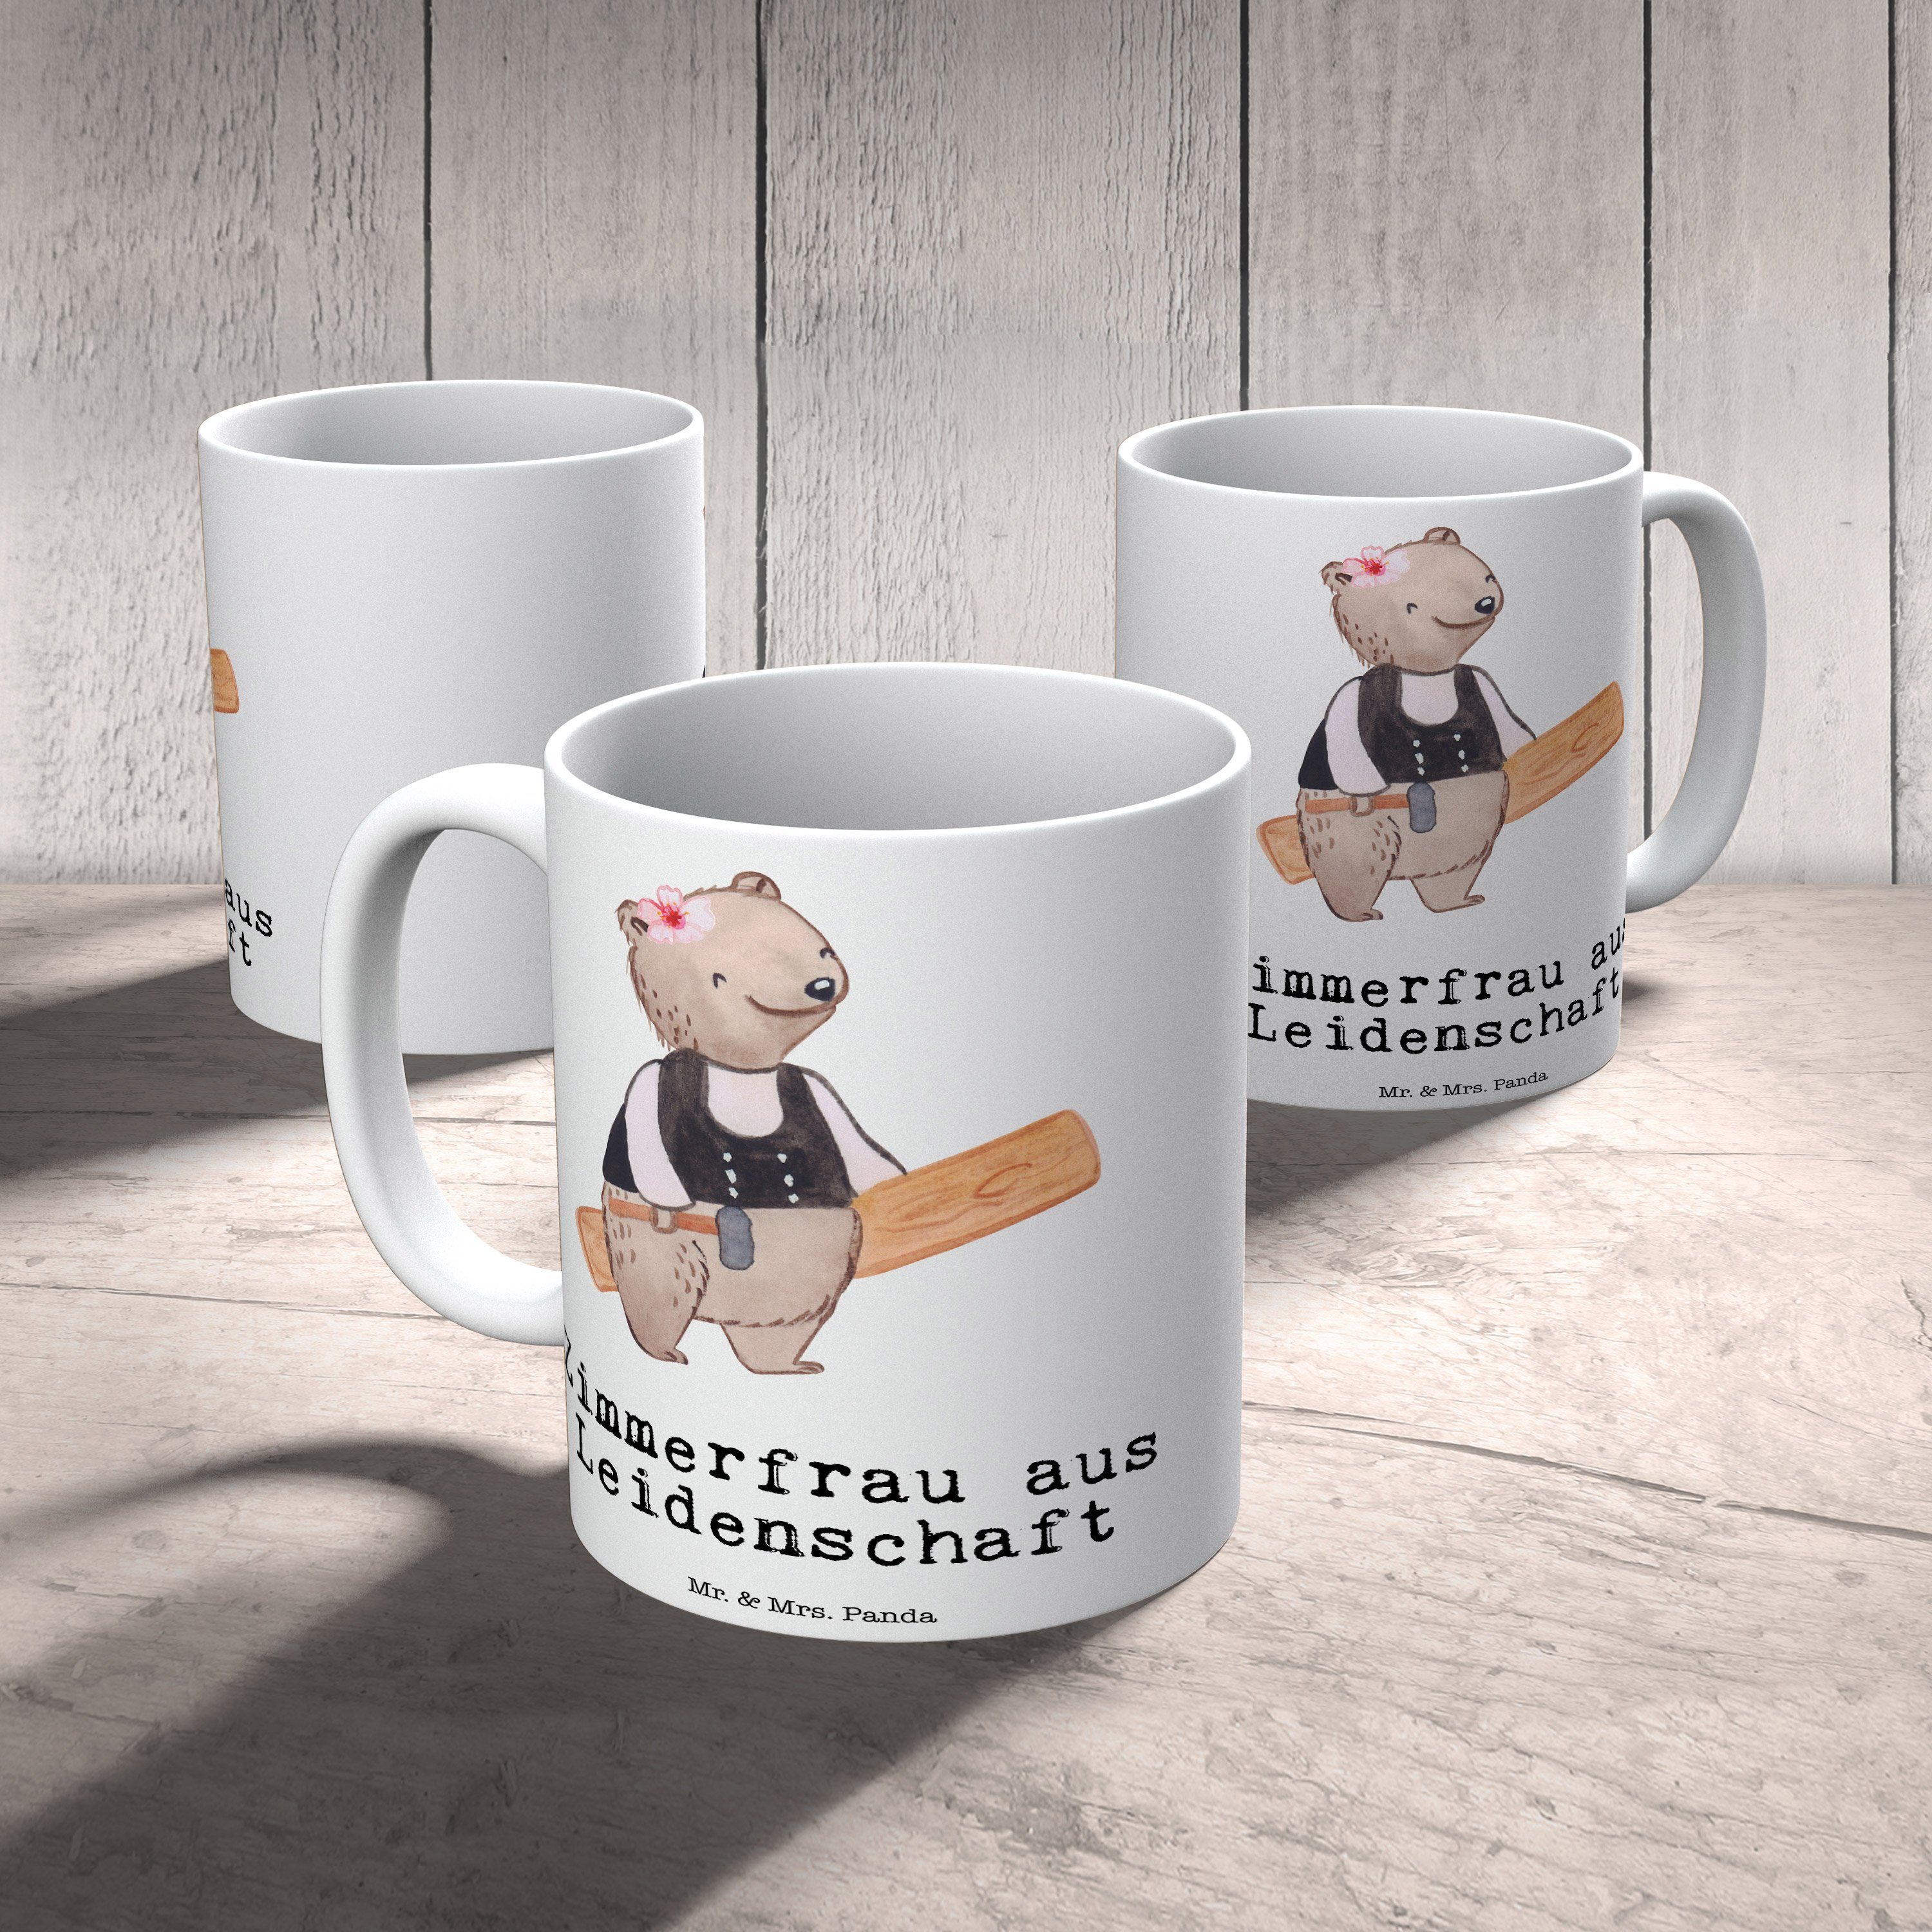 Mr. & Mrs. Panda - Weiß Tasse, Zimmerfrau - Büro Tasse aus Leidenschaft Keramik Tasse, Arb, Geschenk